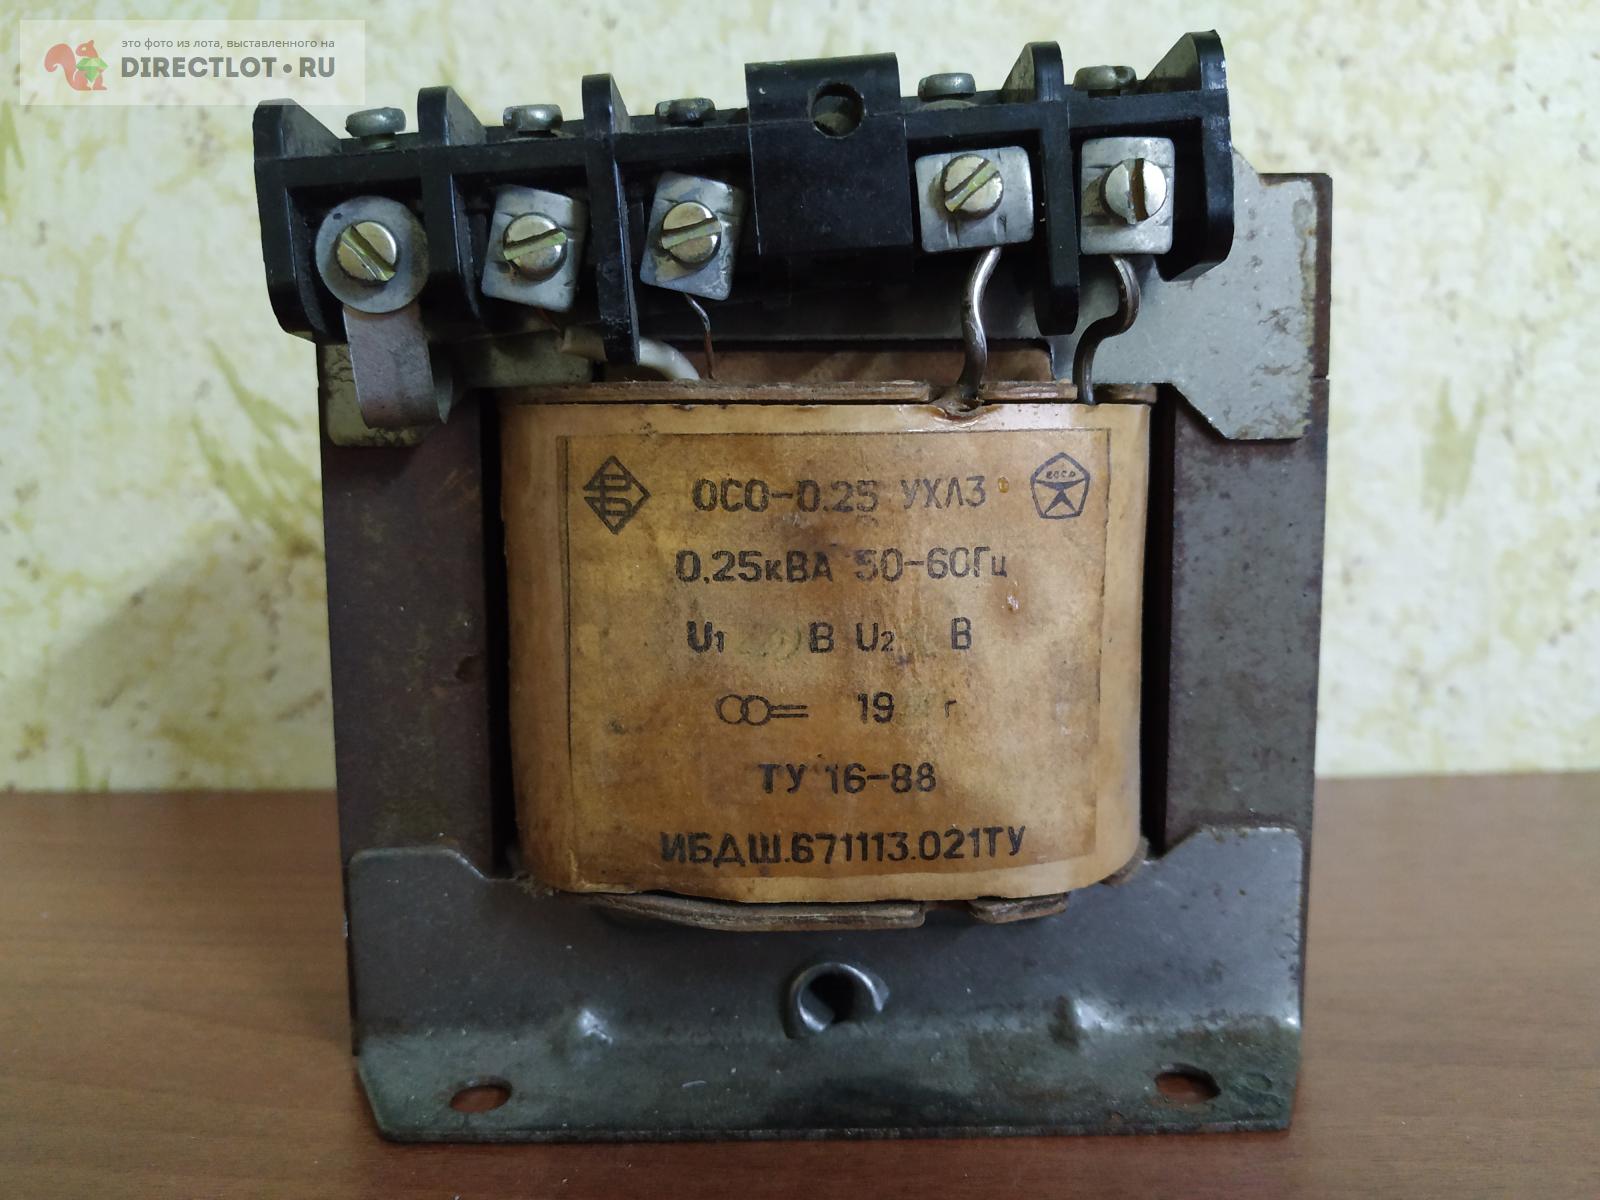  трансформатор 220 на 36 вольт ещё с советских времён  .